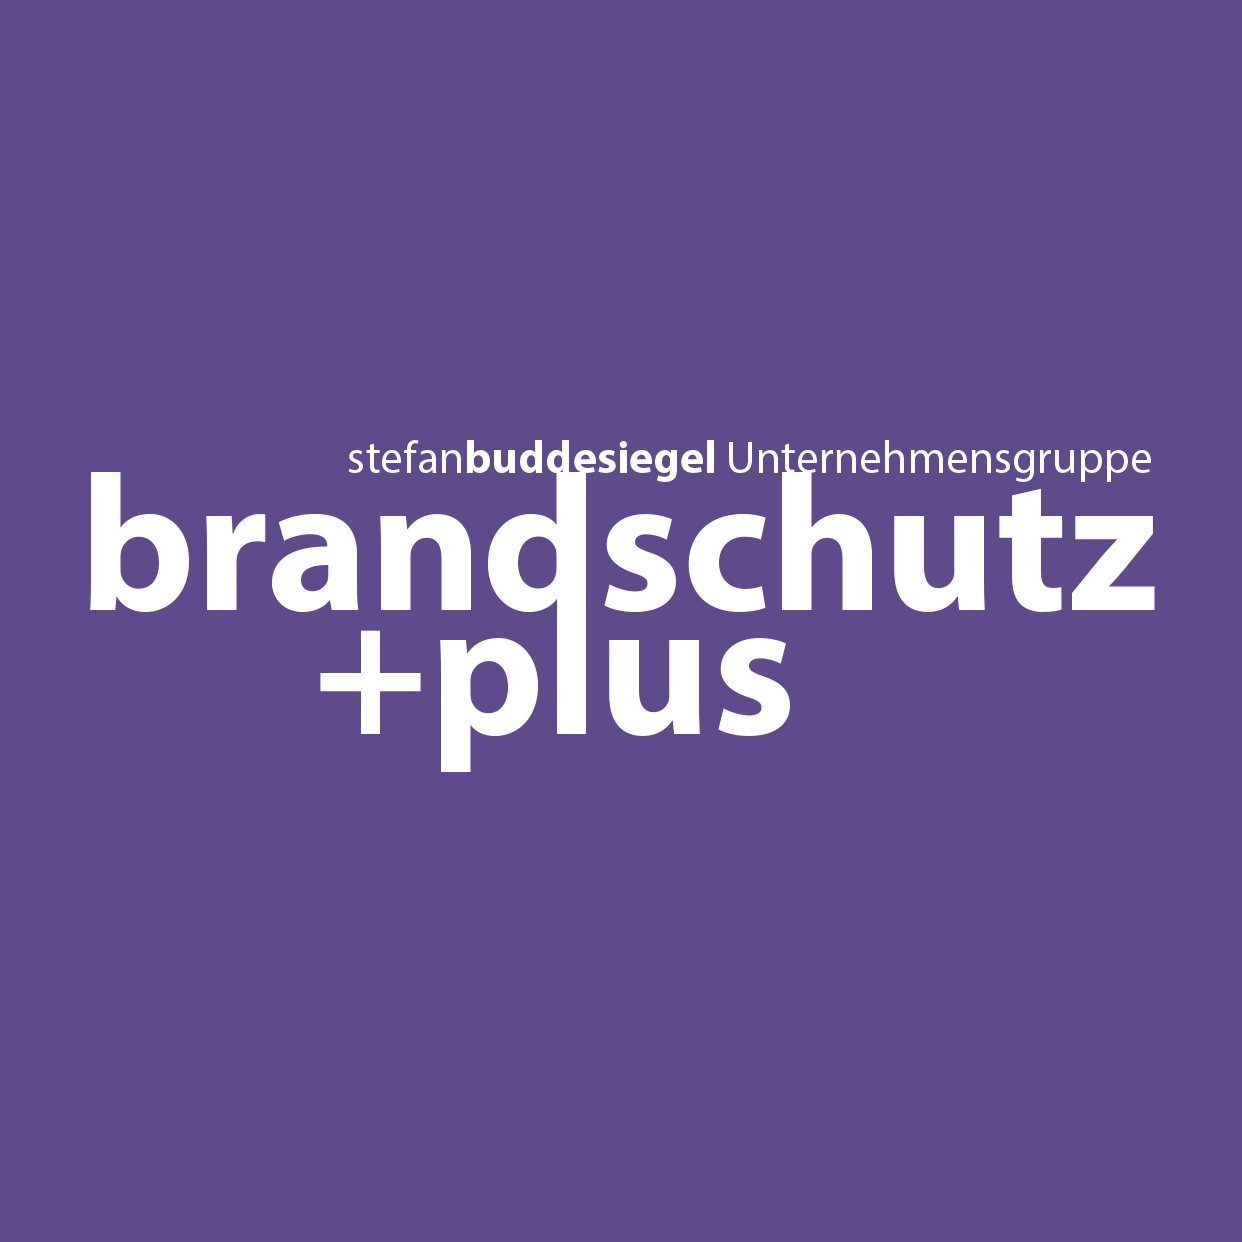 brandschutz+plus